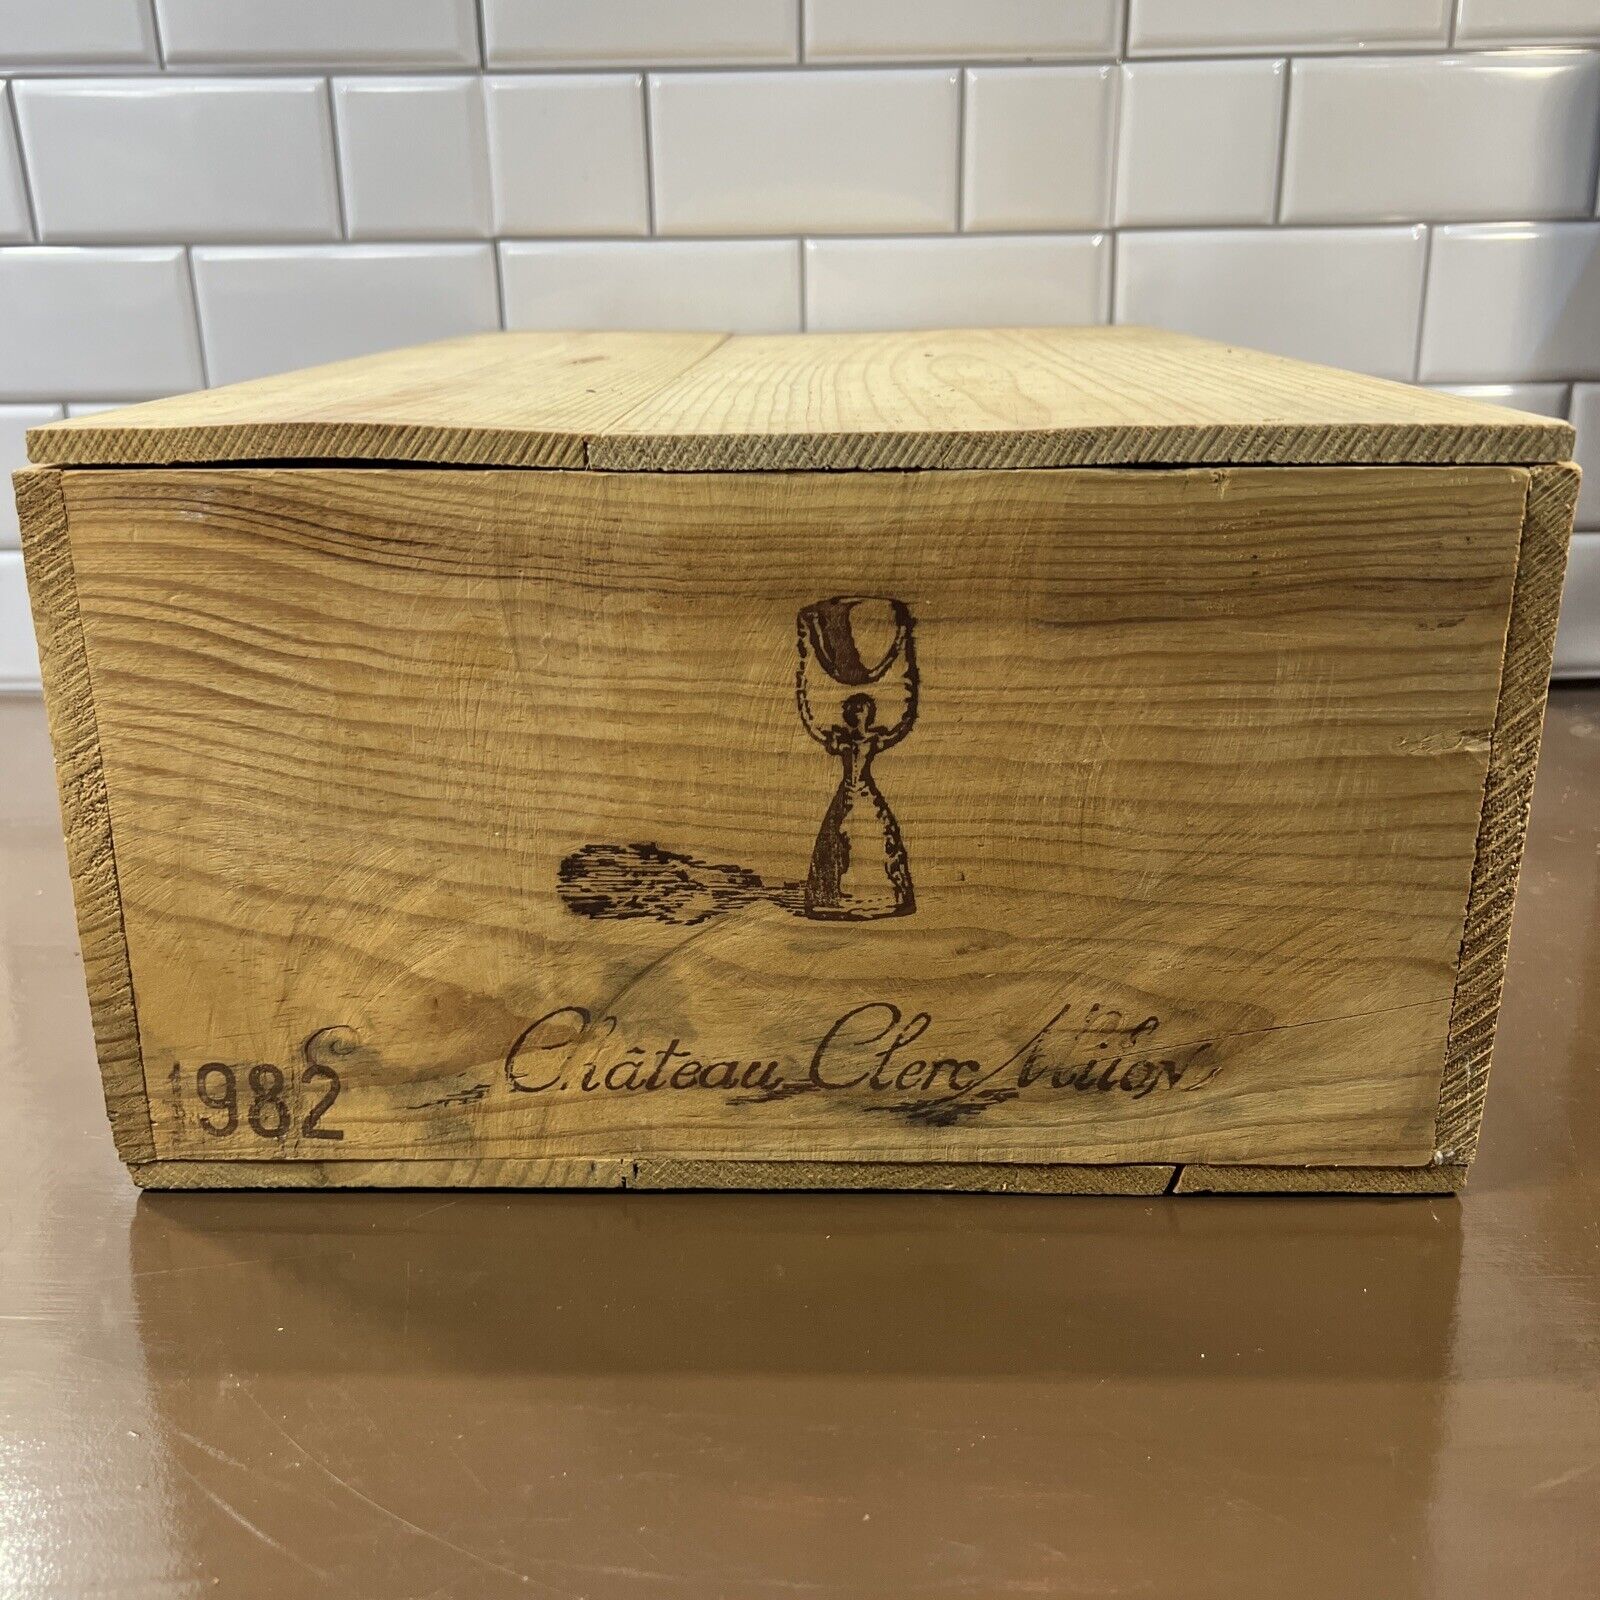 1982 Chateau Clerc Milon 12 Bottle Wooden Wine Case Crate